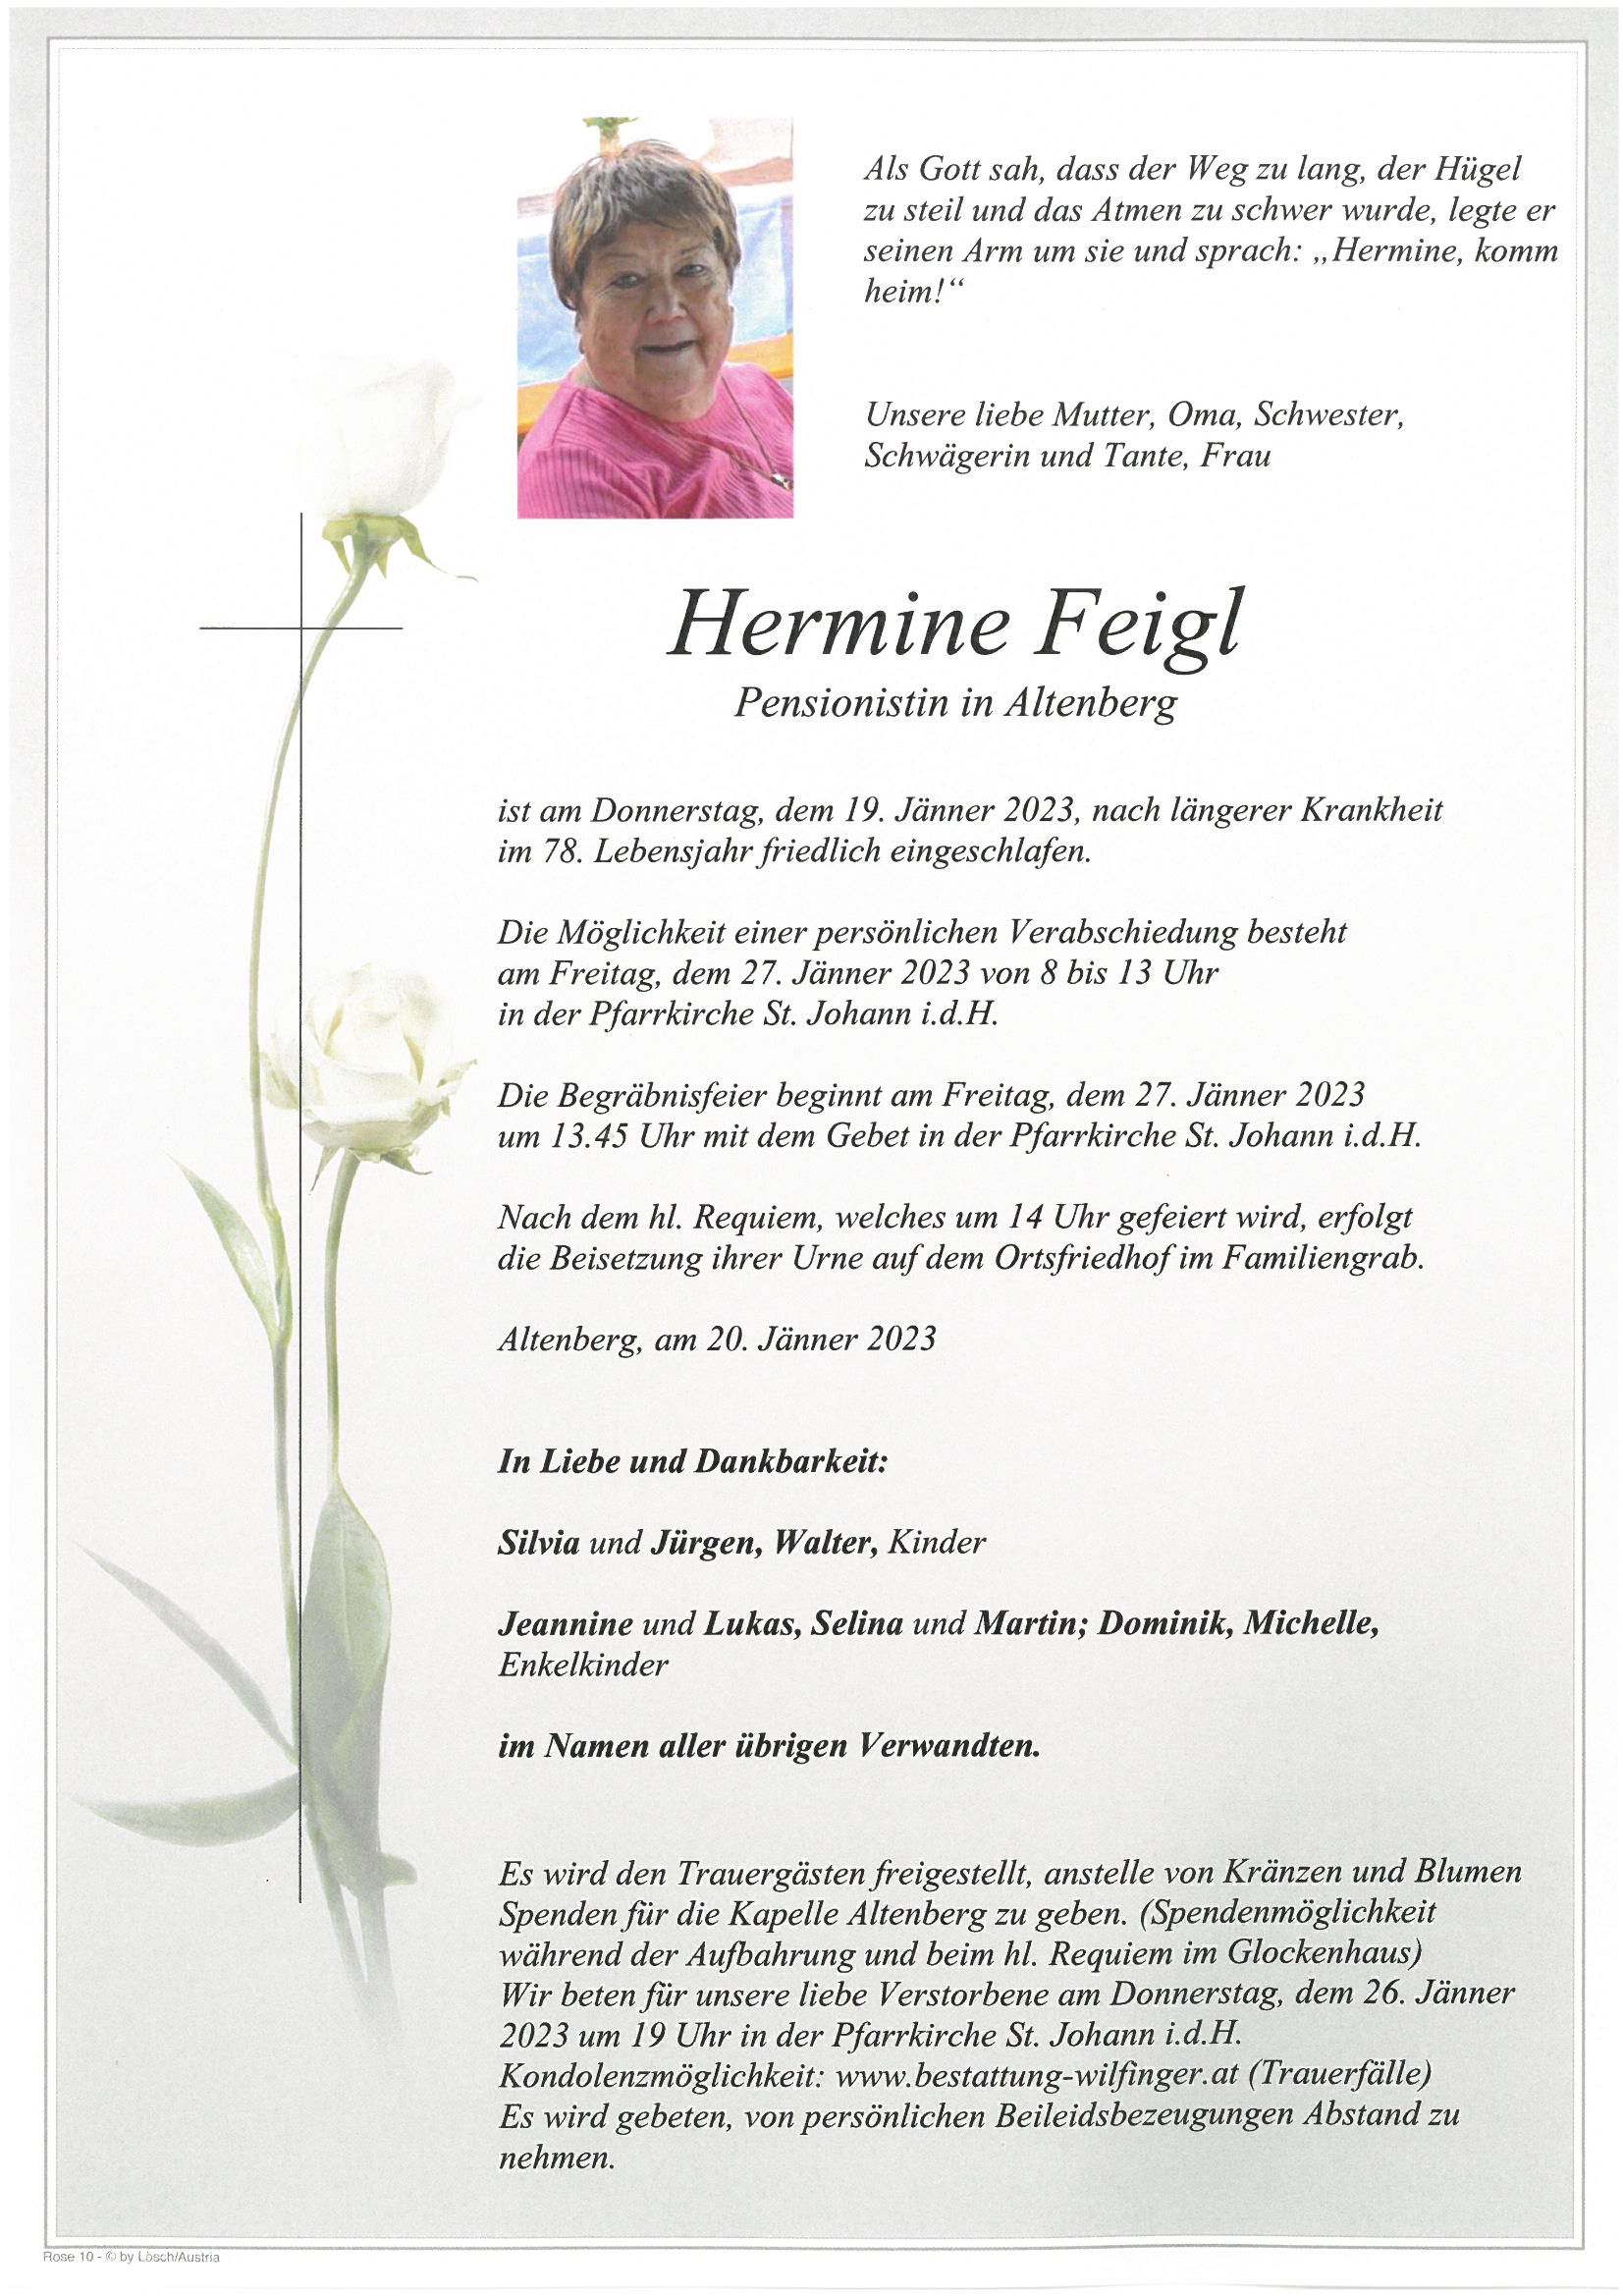 Hermine Feigl, Altenberg